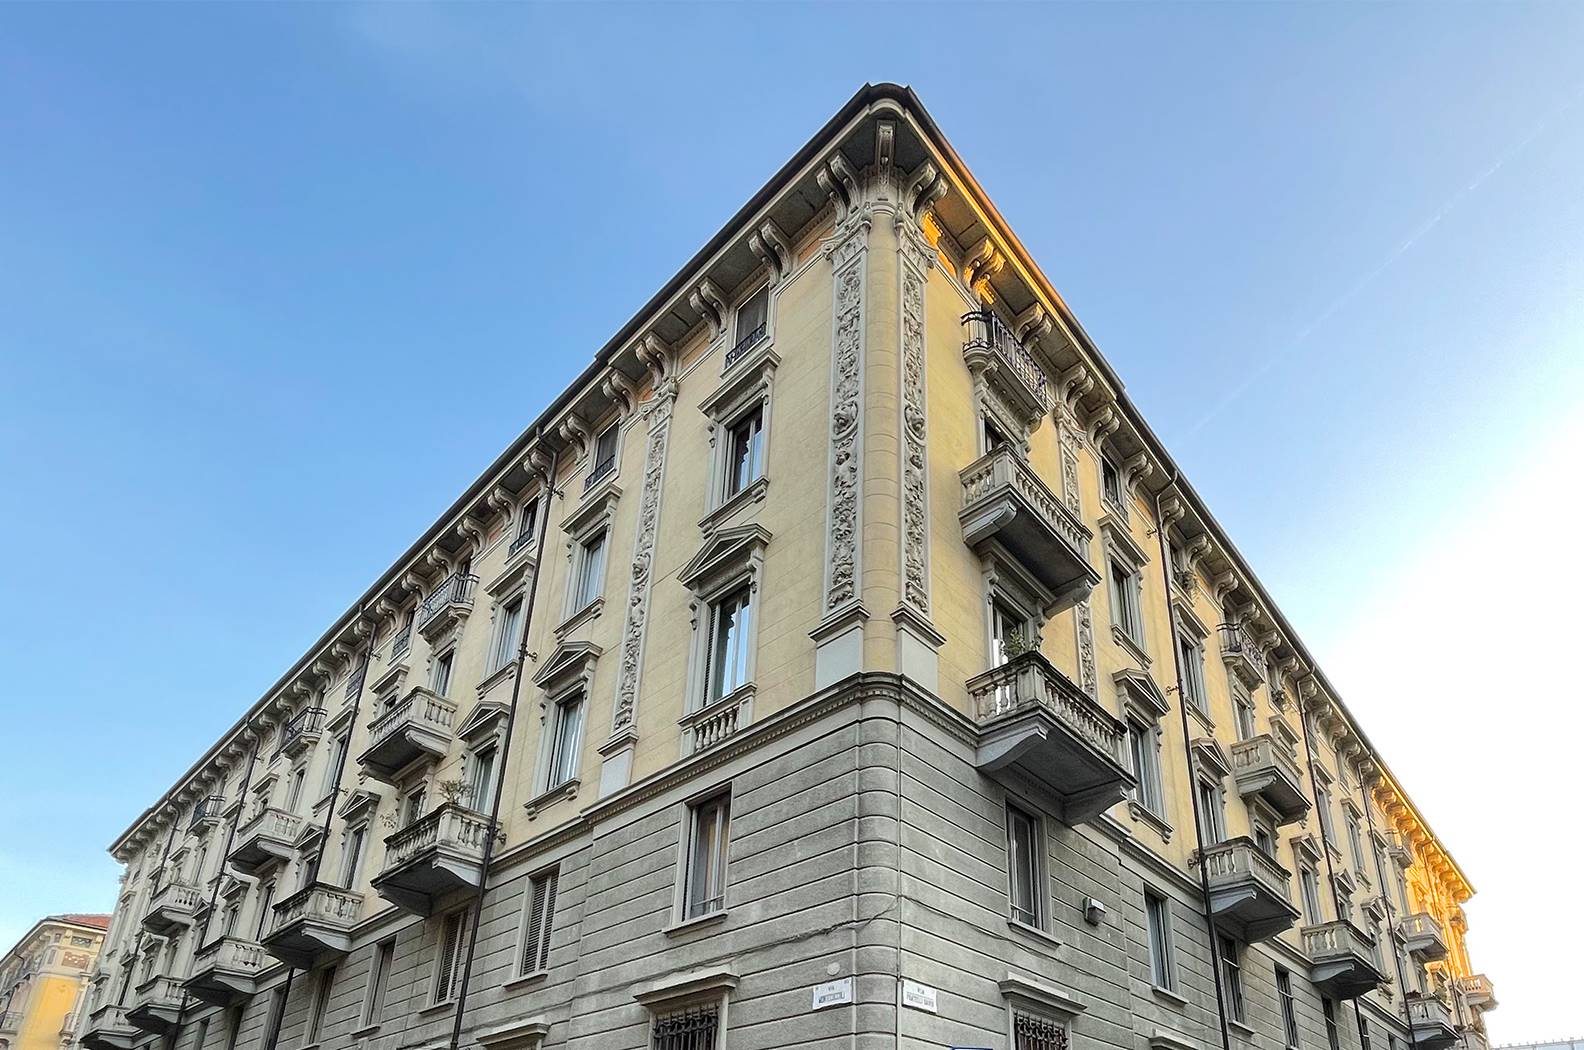 Ufficio / Studio in affitto a Torino, 12 locali, zona San Donato, Cit Turin, Campidoglio,, prezzo € 7.000 | PortaleAgenzieImmobiliari.it